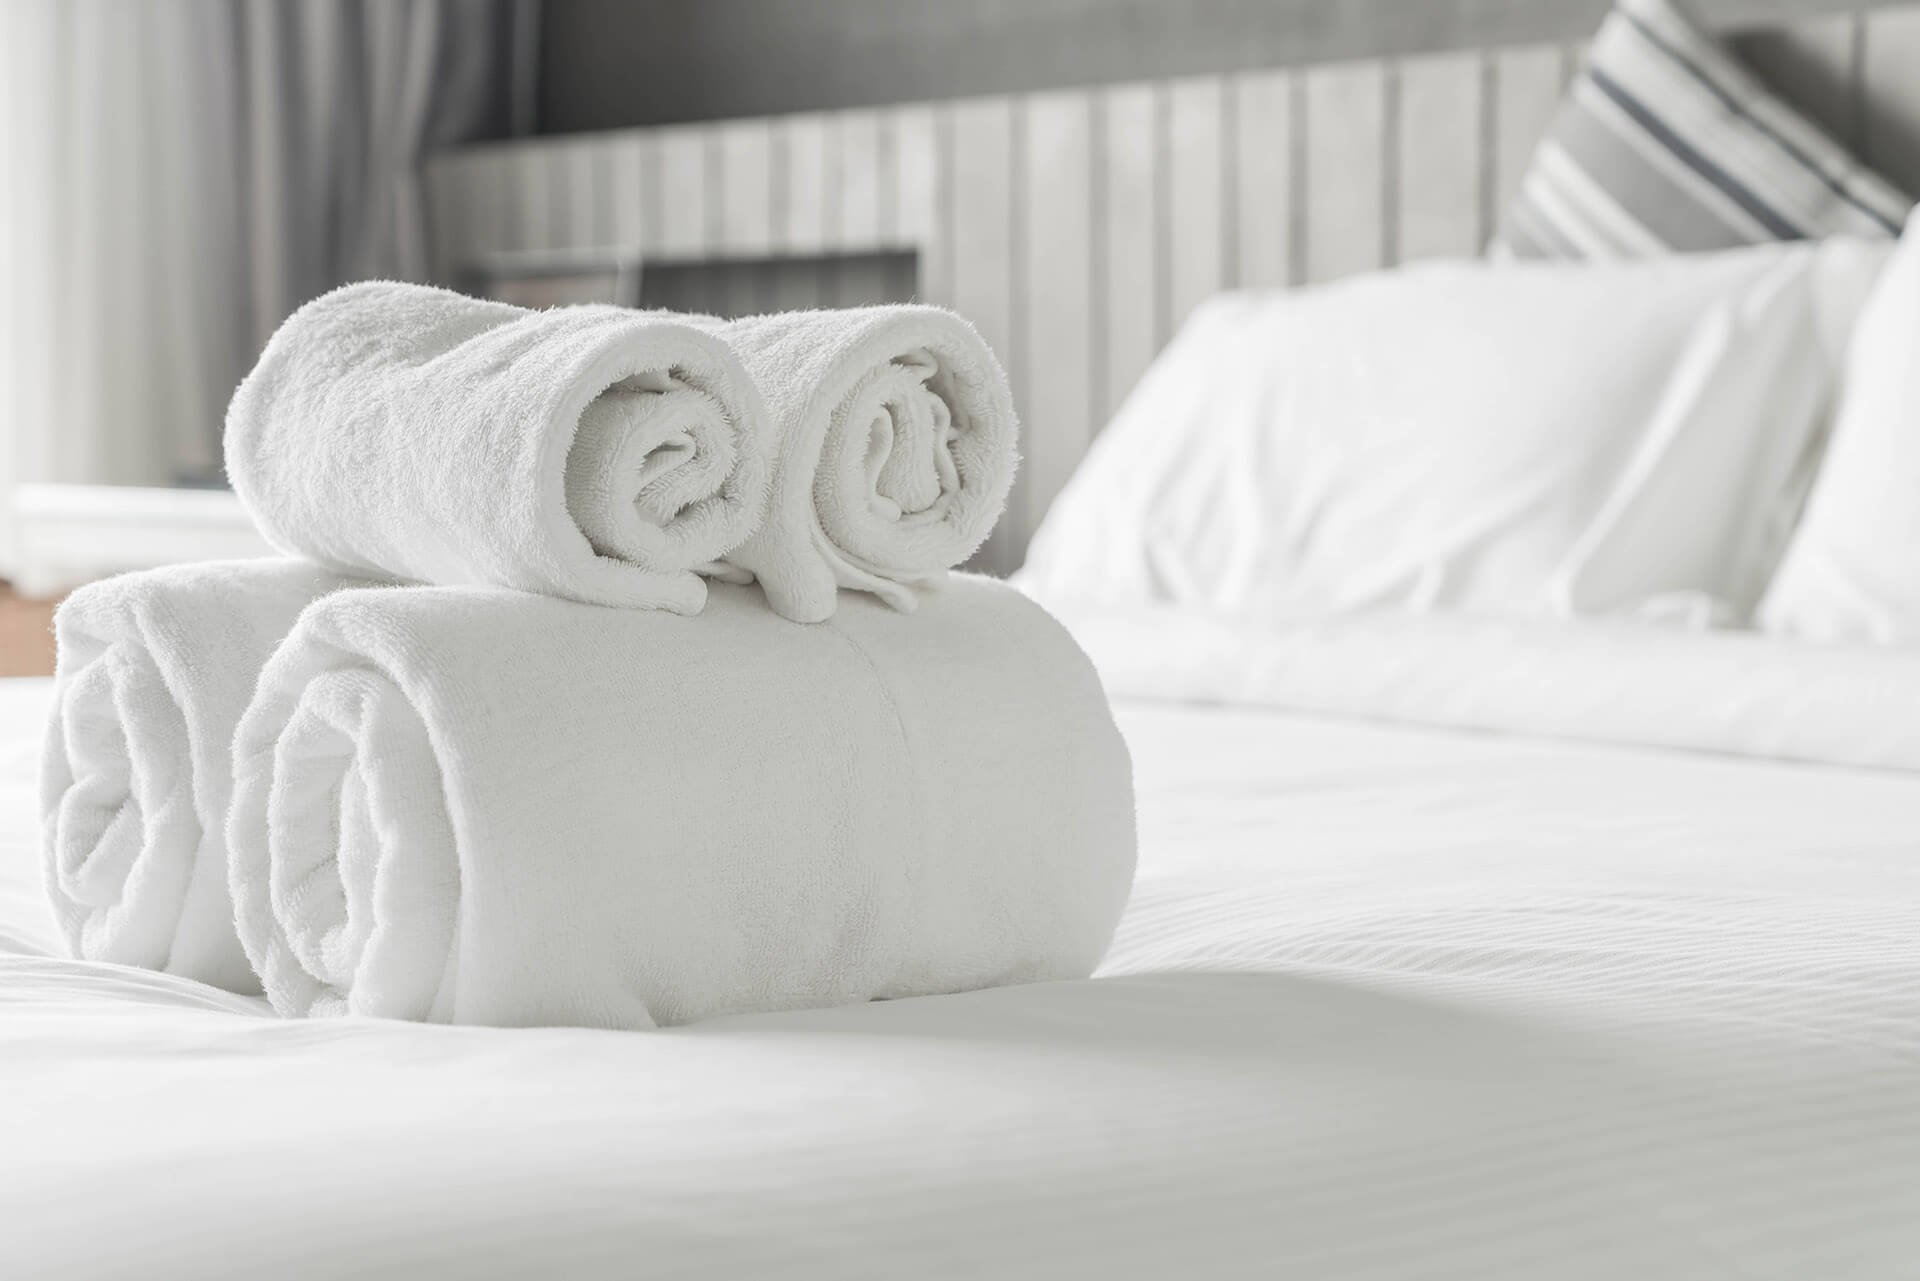 Полотенце на кровати. Постельное белье и полотенца. Белоснежные полотенца. Полотенца в отеле. Чистое белье.